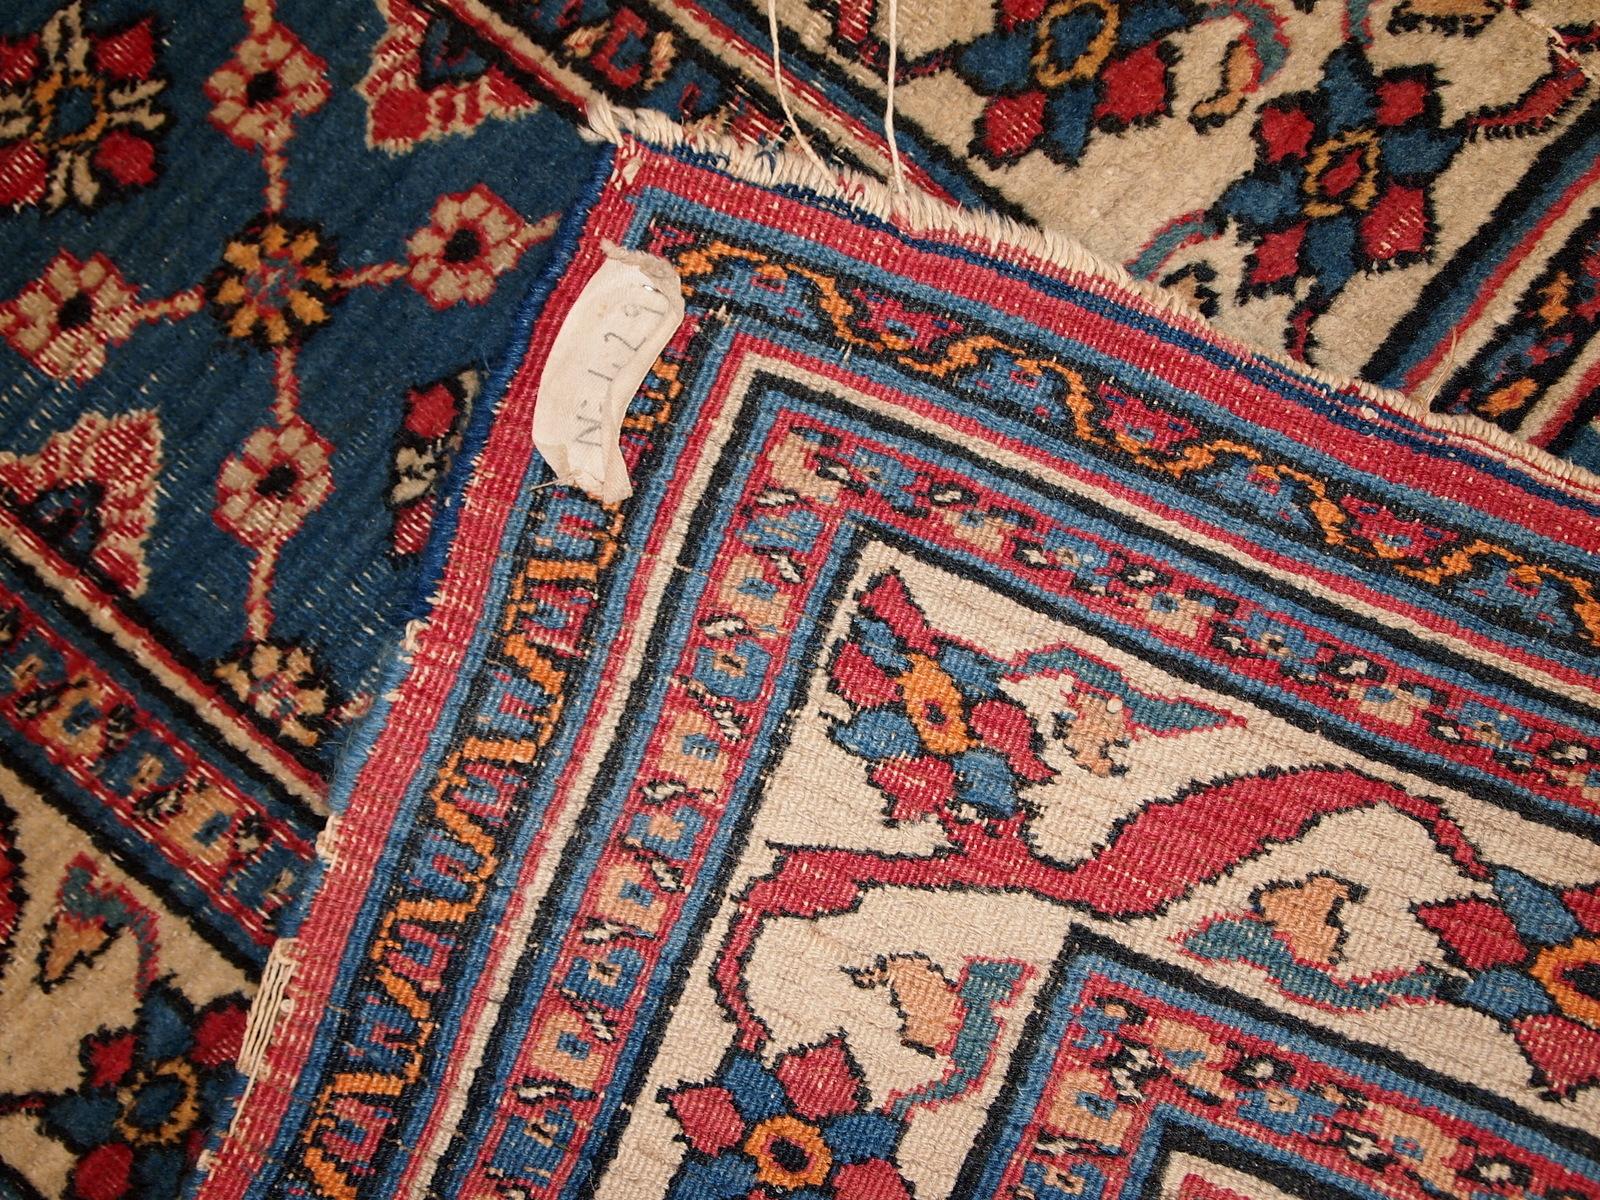 Handgefertigter antiker persischer Mashad-Läufer im Originalzustand. Allover-Muster, in zwei Teile aufgeteilt. Der Blauton ändert sich von einer Seite zur anderen von dunkler zu heller. Es befindet sich in einem schlechten Zustand.

- Zustand: